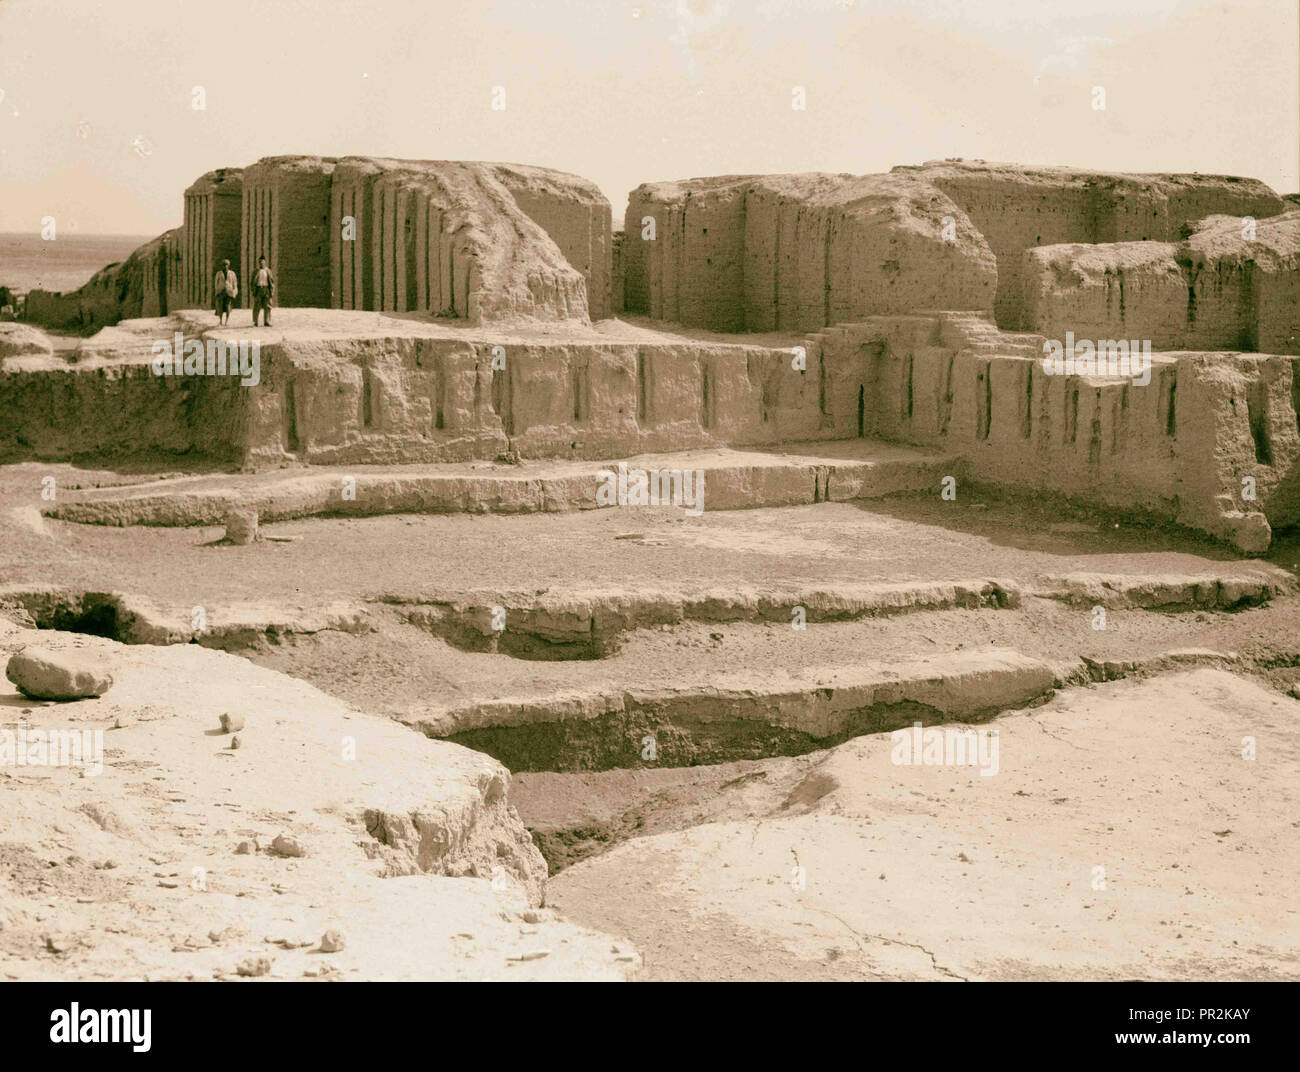 Irak. Kis. (Tel-Uhaimir). Die herrschende Stadt unmittelbar nach der Sintflut. Die antiken Ruinen zeigen umfangreiche bleibt. 1932, Irak Stockfoto